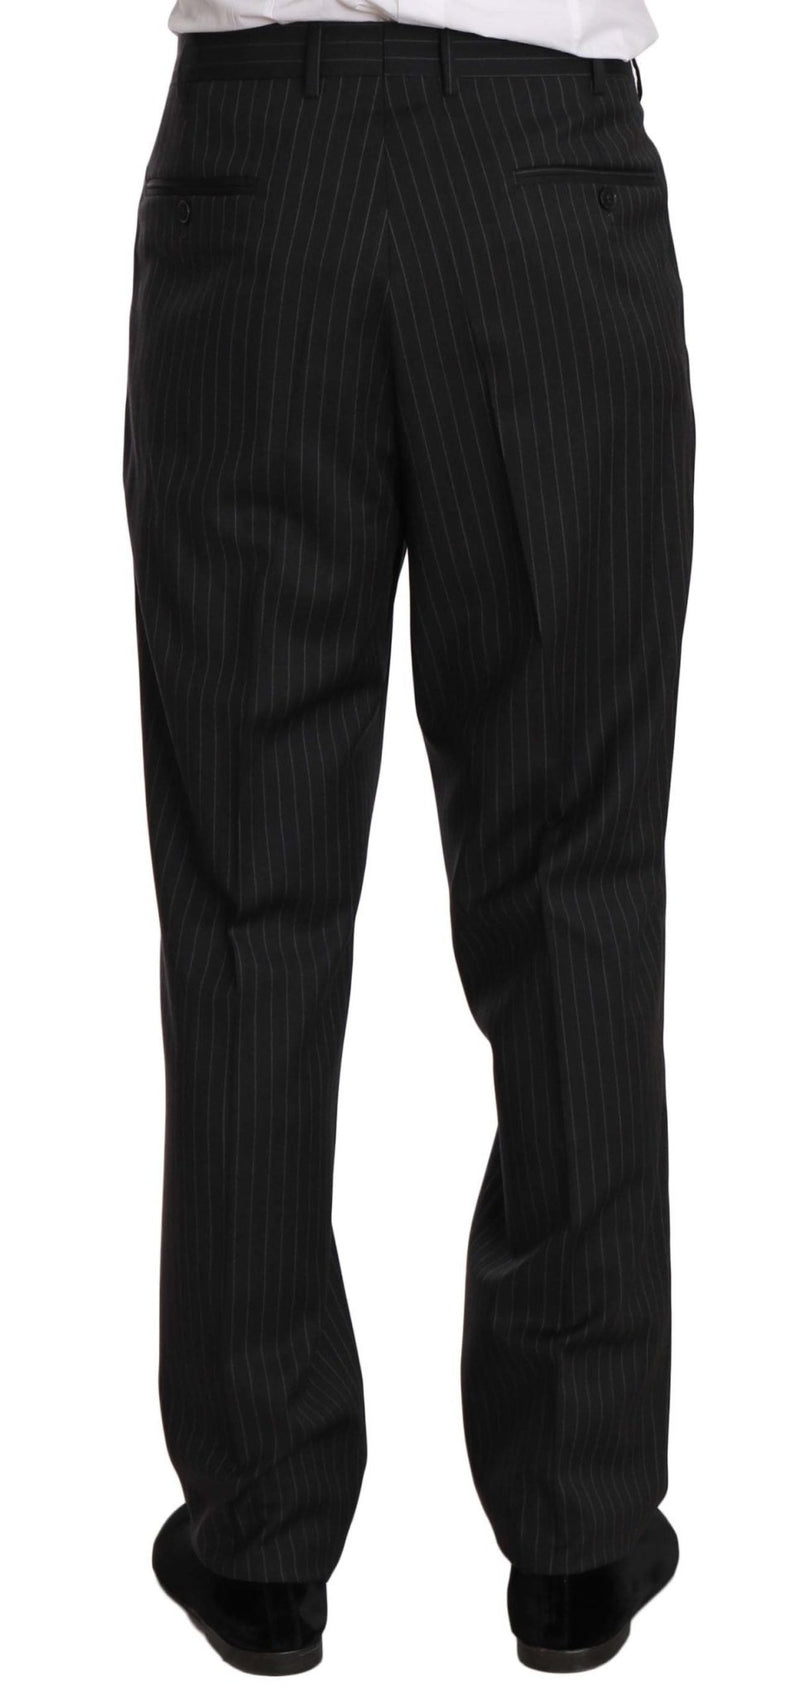 Black Striped Two Piece 3 Button 100% Wool Suit - Avaz Shop